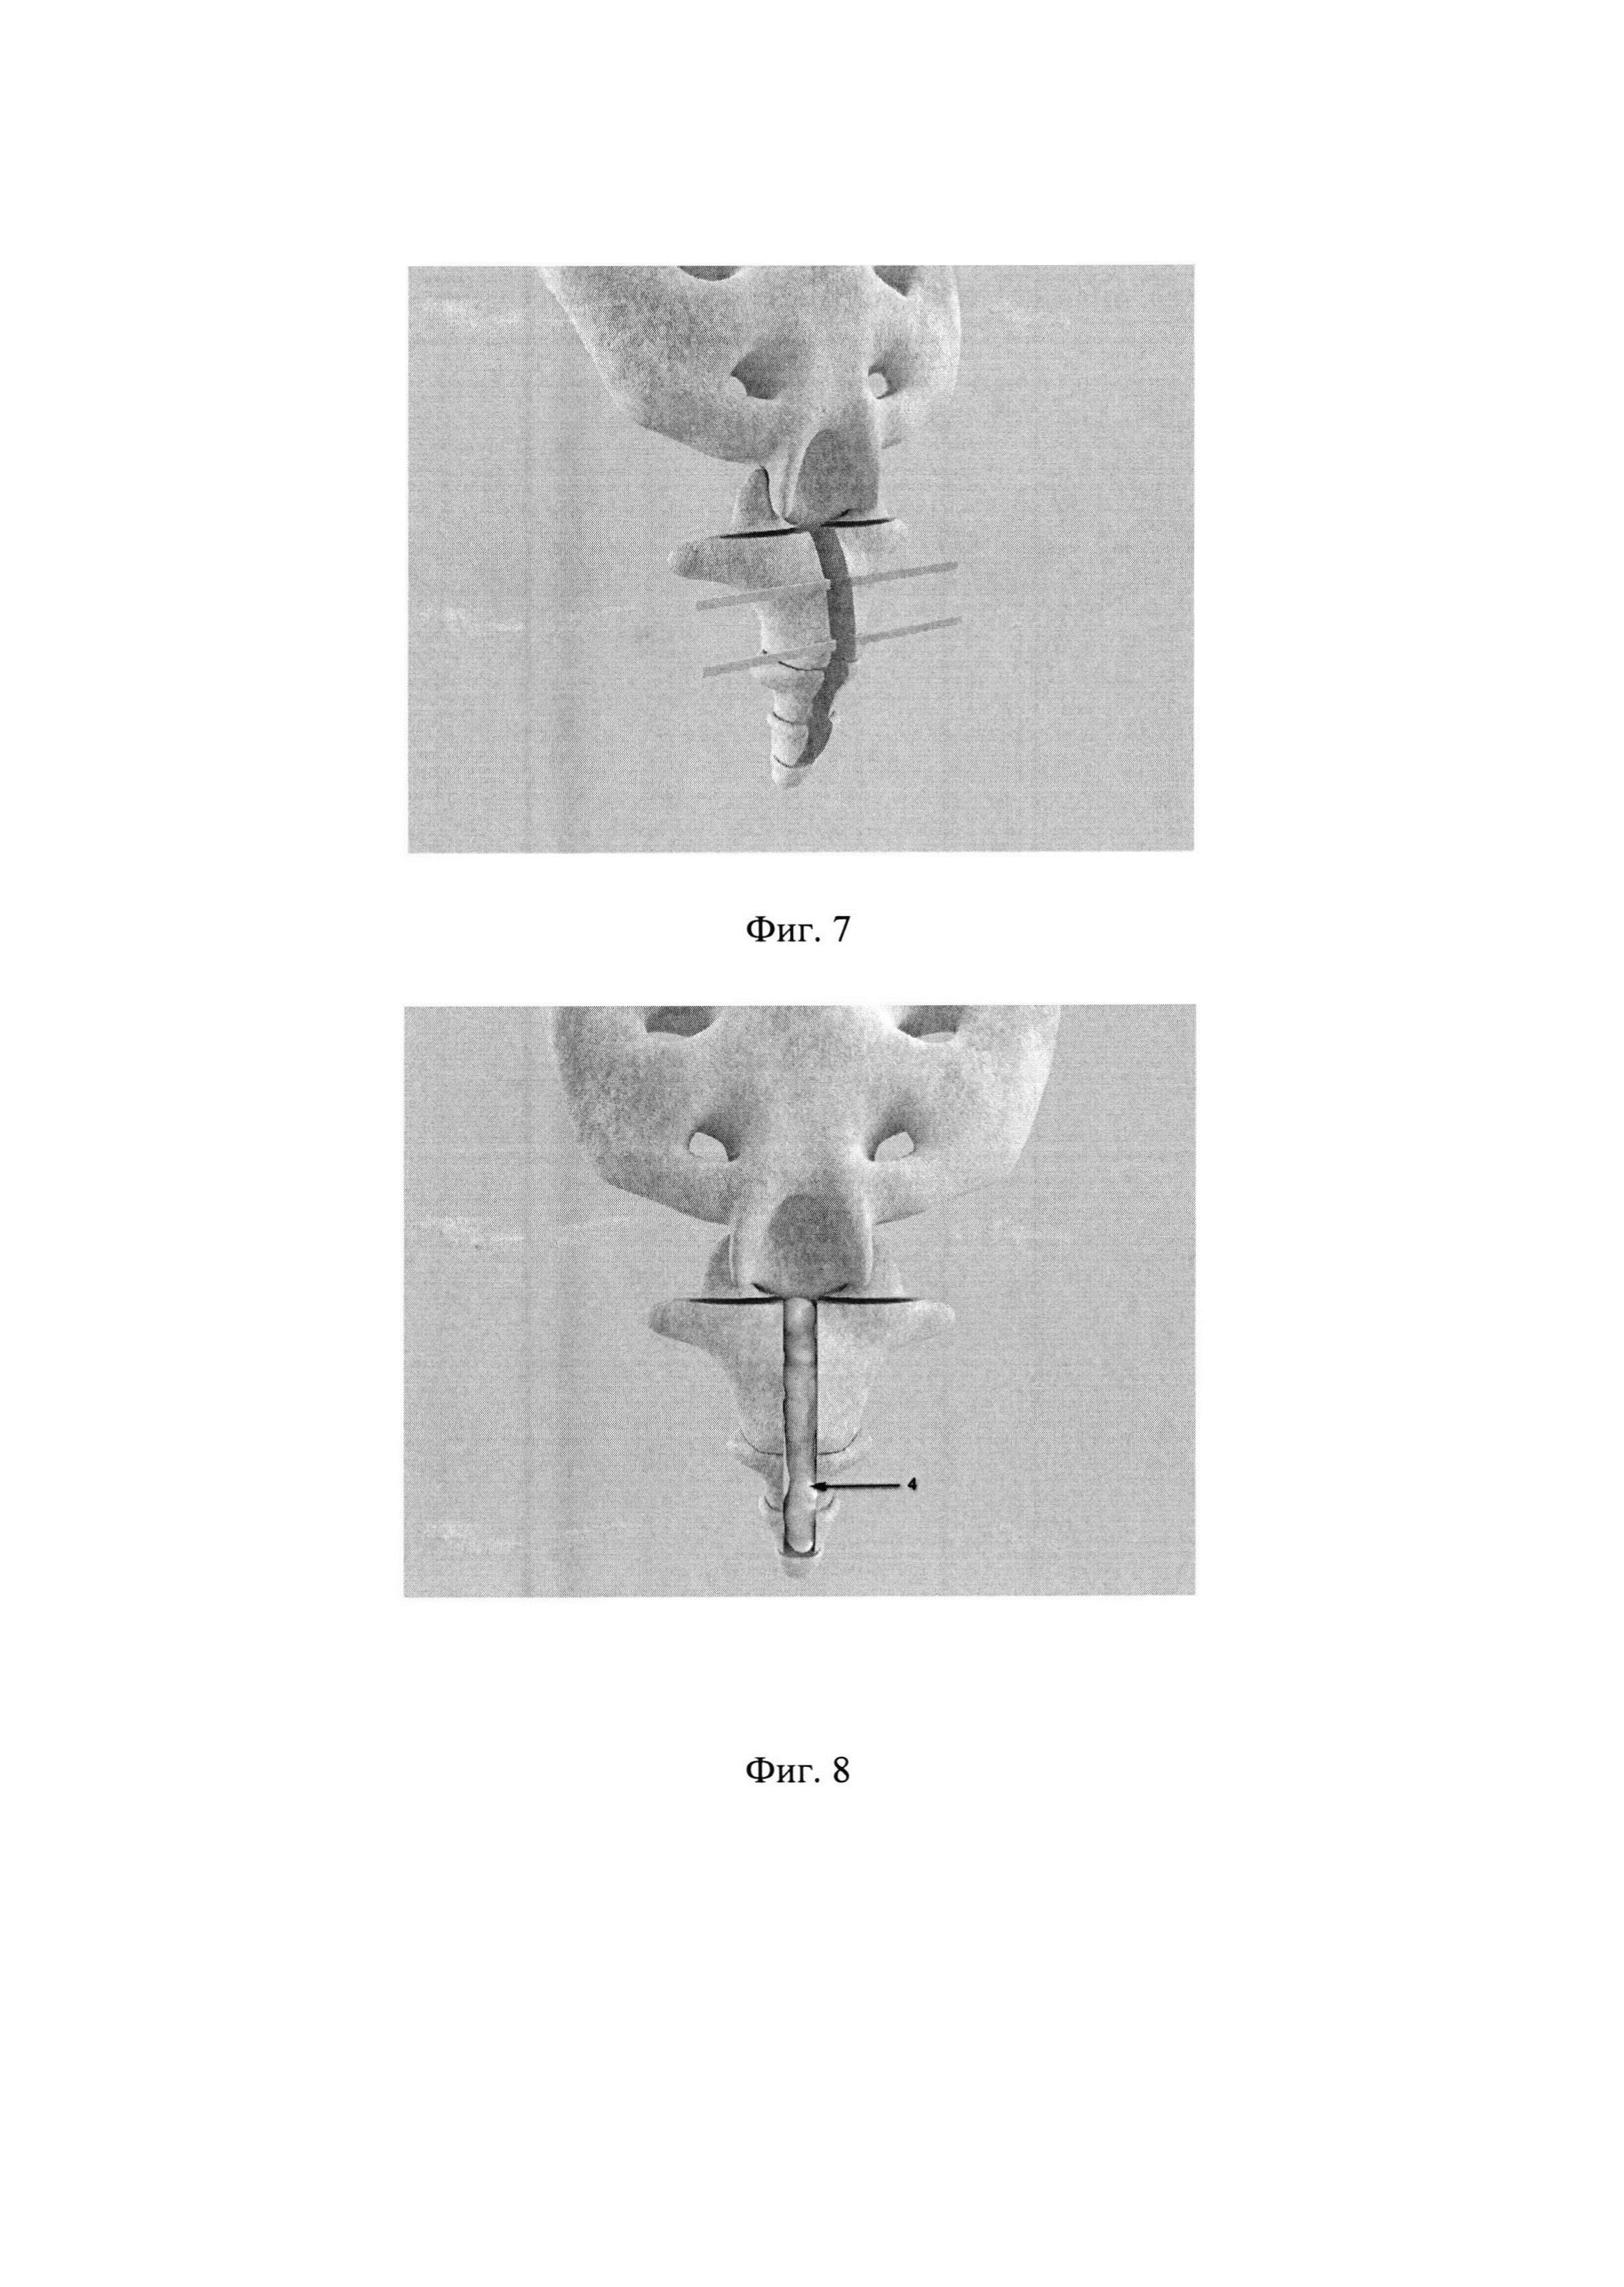 Способ оперативного лечения посттравматической кокцигодинии с использованием аллопланта седалищного нерва и перфорированной металлической пластины для замещения костного дефекта